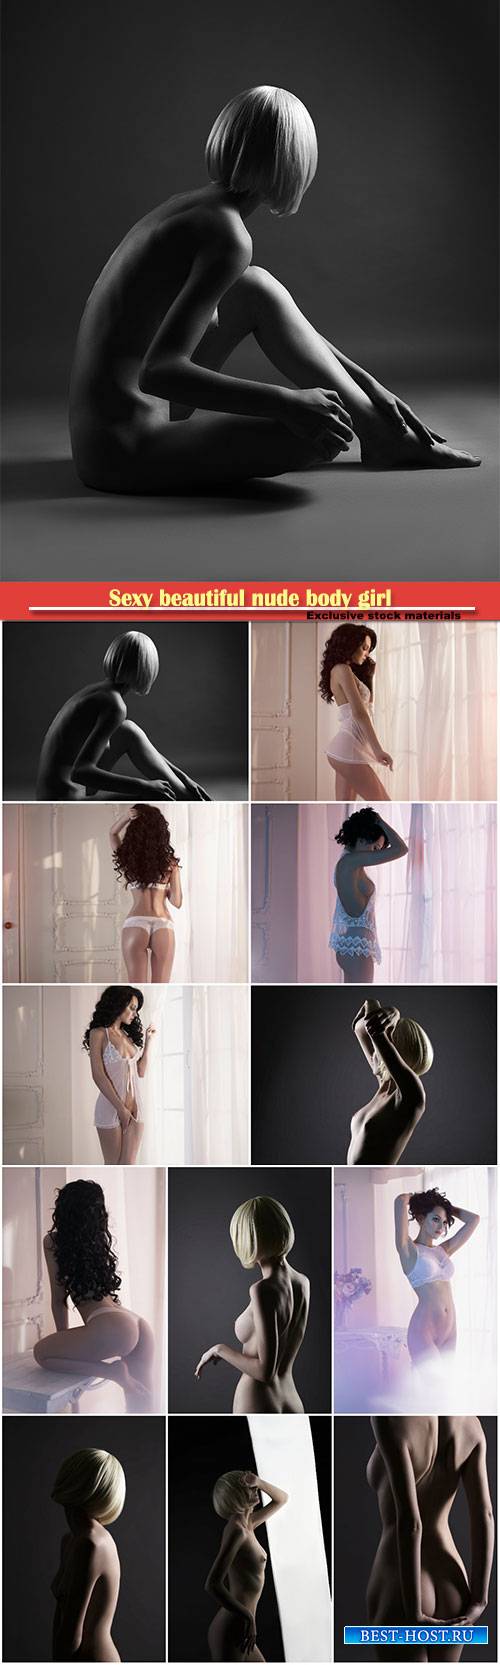 Sexy beautiful nude body girl